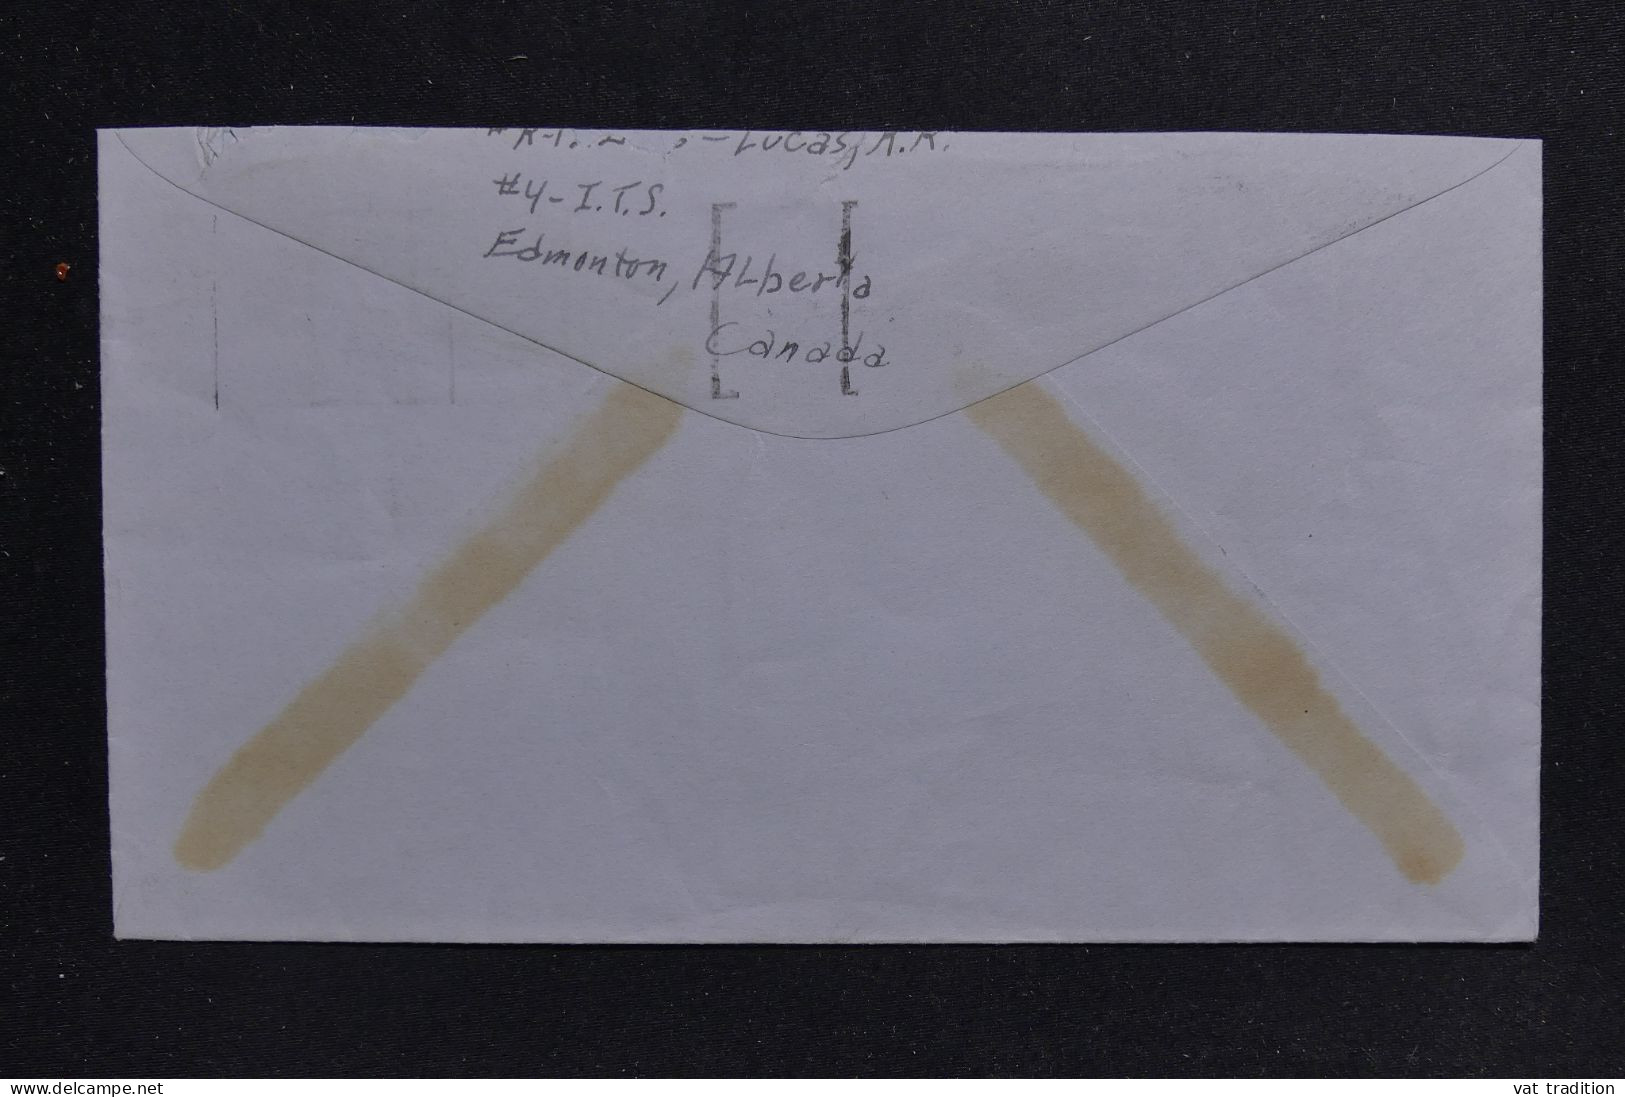 CANADA - Enveloppe De La Royal Canadian Air Force De Edmondton Pour Seattle En 1941, Oblitération Patriotique - L 143300 - Briefe U. Dokumente